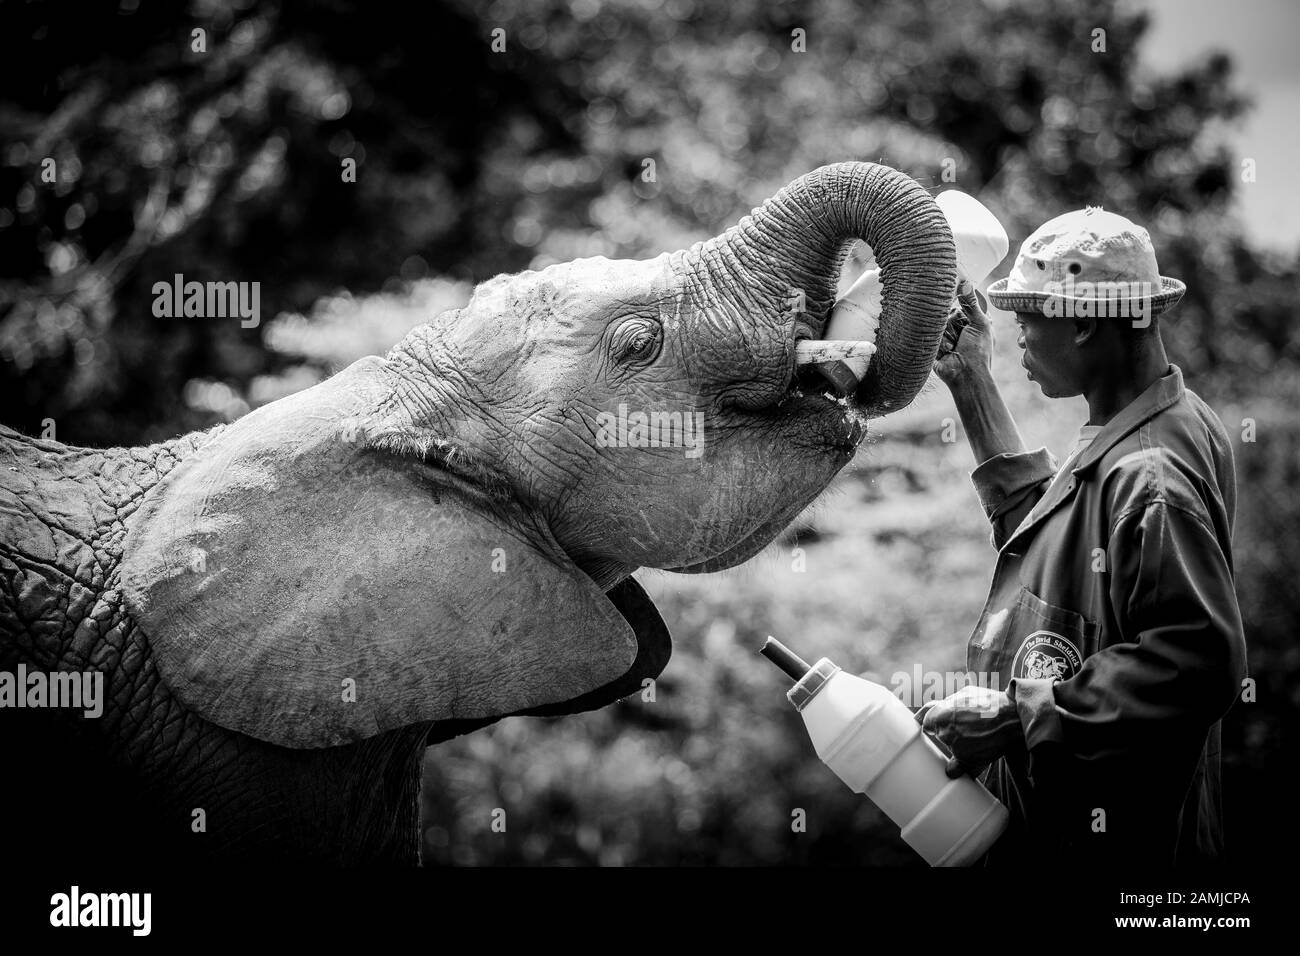 L'Afrique de l'orphelin (Loxodonta Africana) les éléphants au David Sheldrick Wildlife Trust (DSWT) à la périphérie de Nairobi, Kenya. Banque D'Images